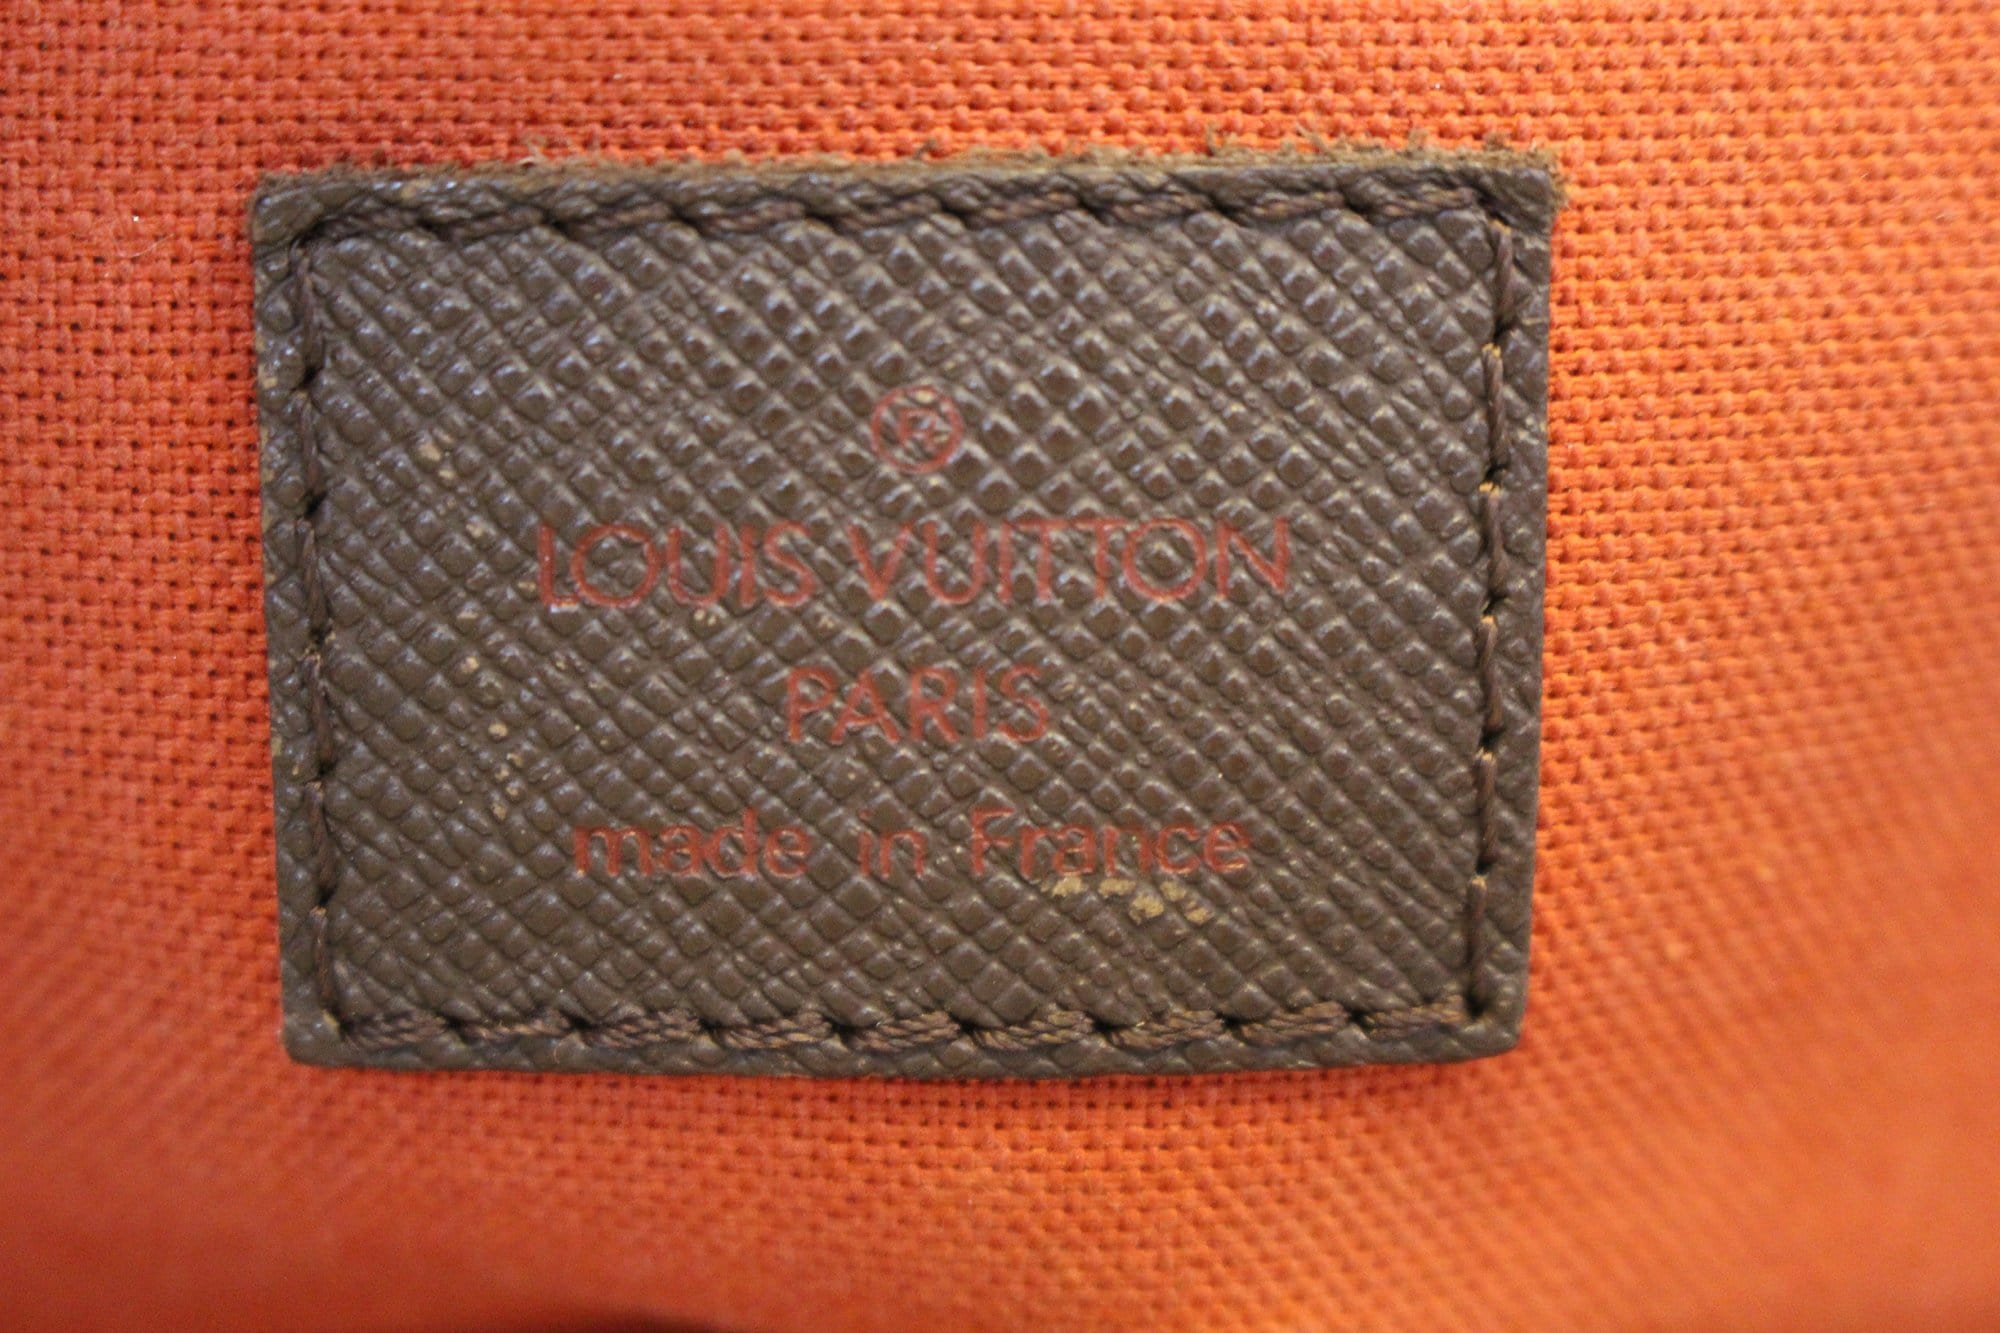 Louis Vuitton Damier Ebene Canvas Belem Mm (Authentic Pre-Owned) -  ShopStyle Shoulder Bags